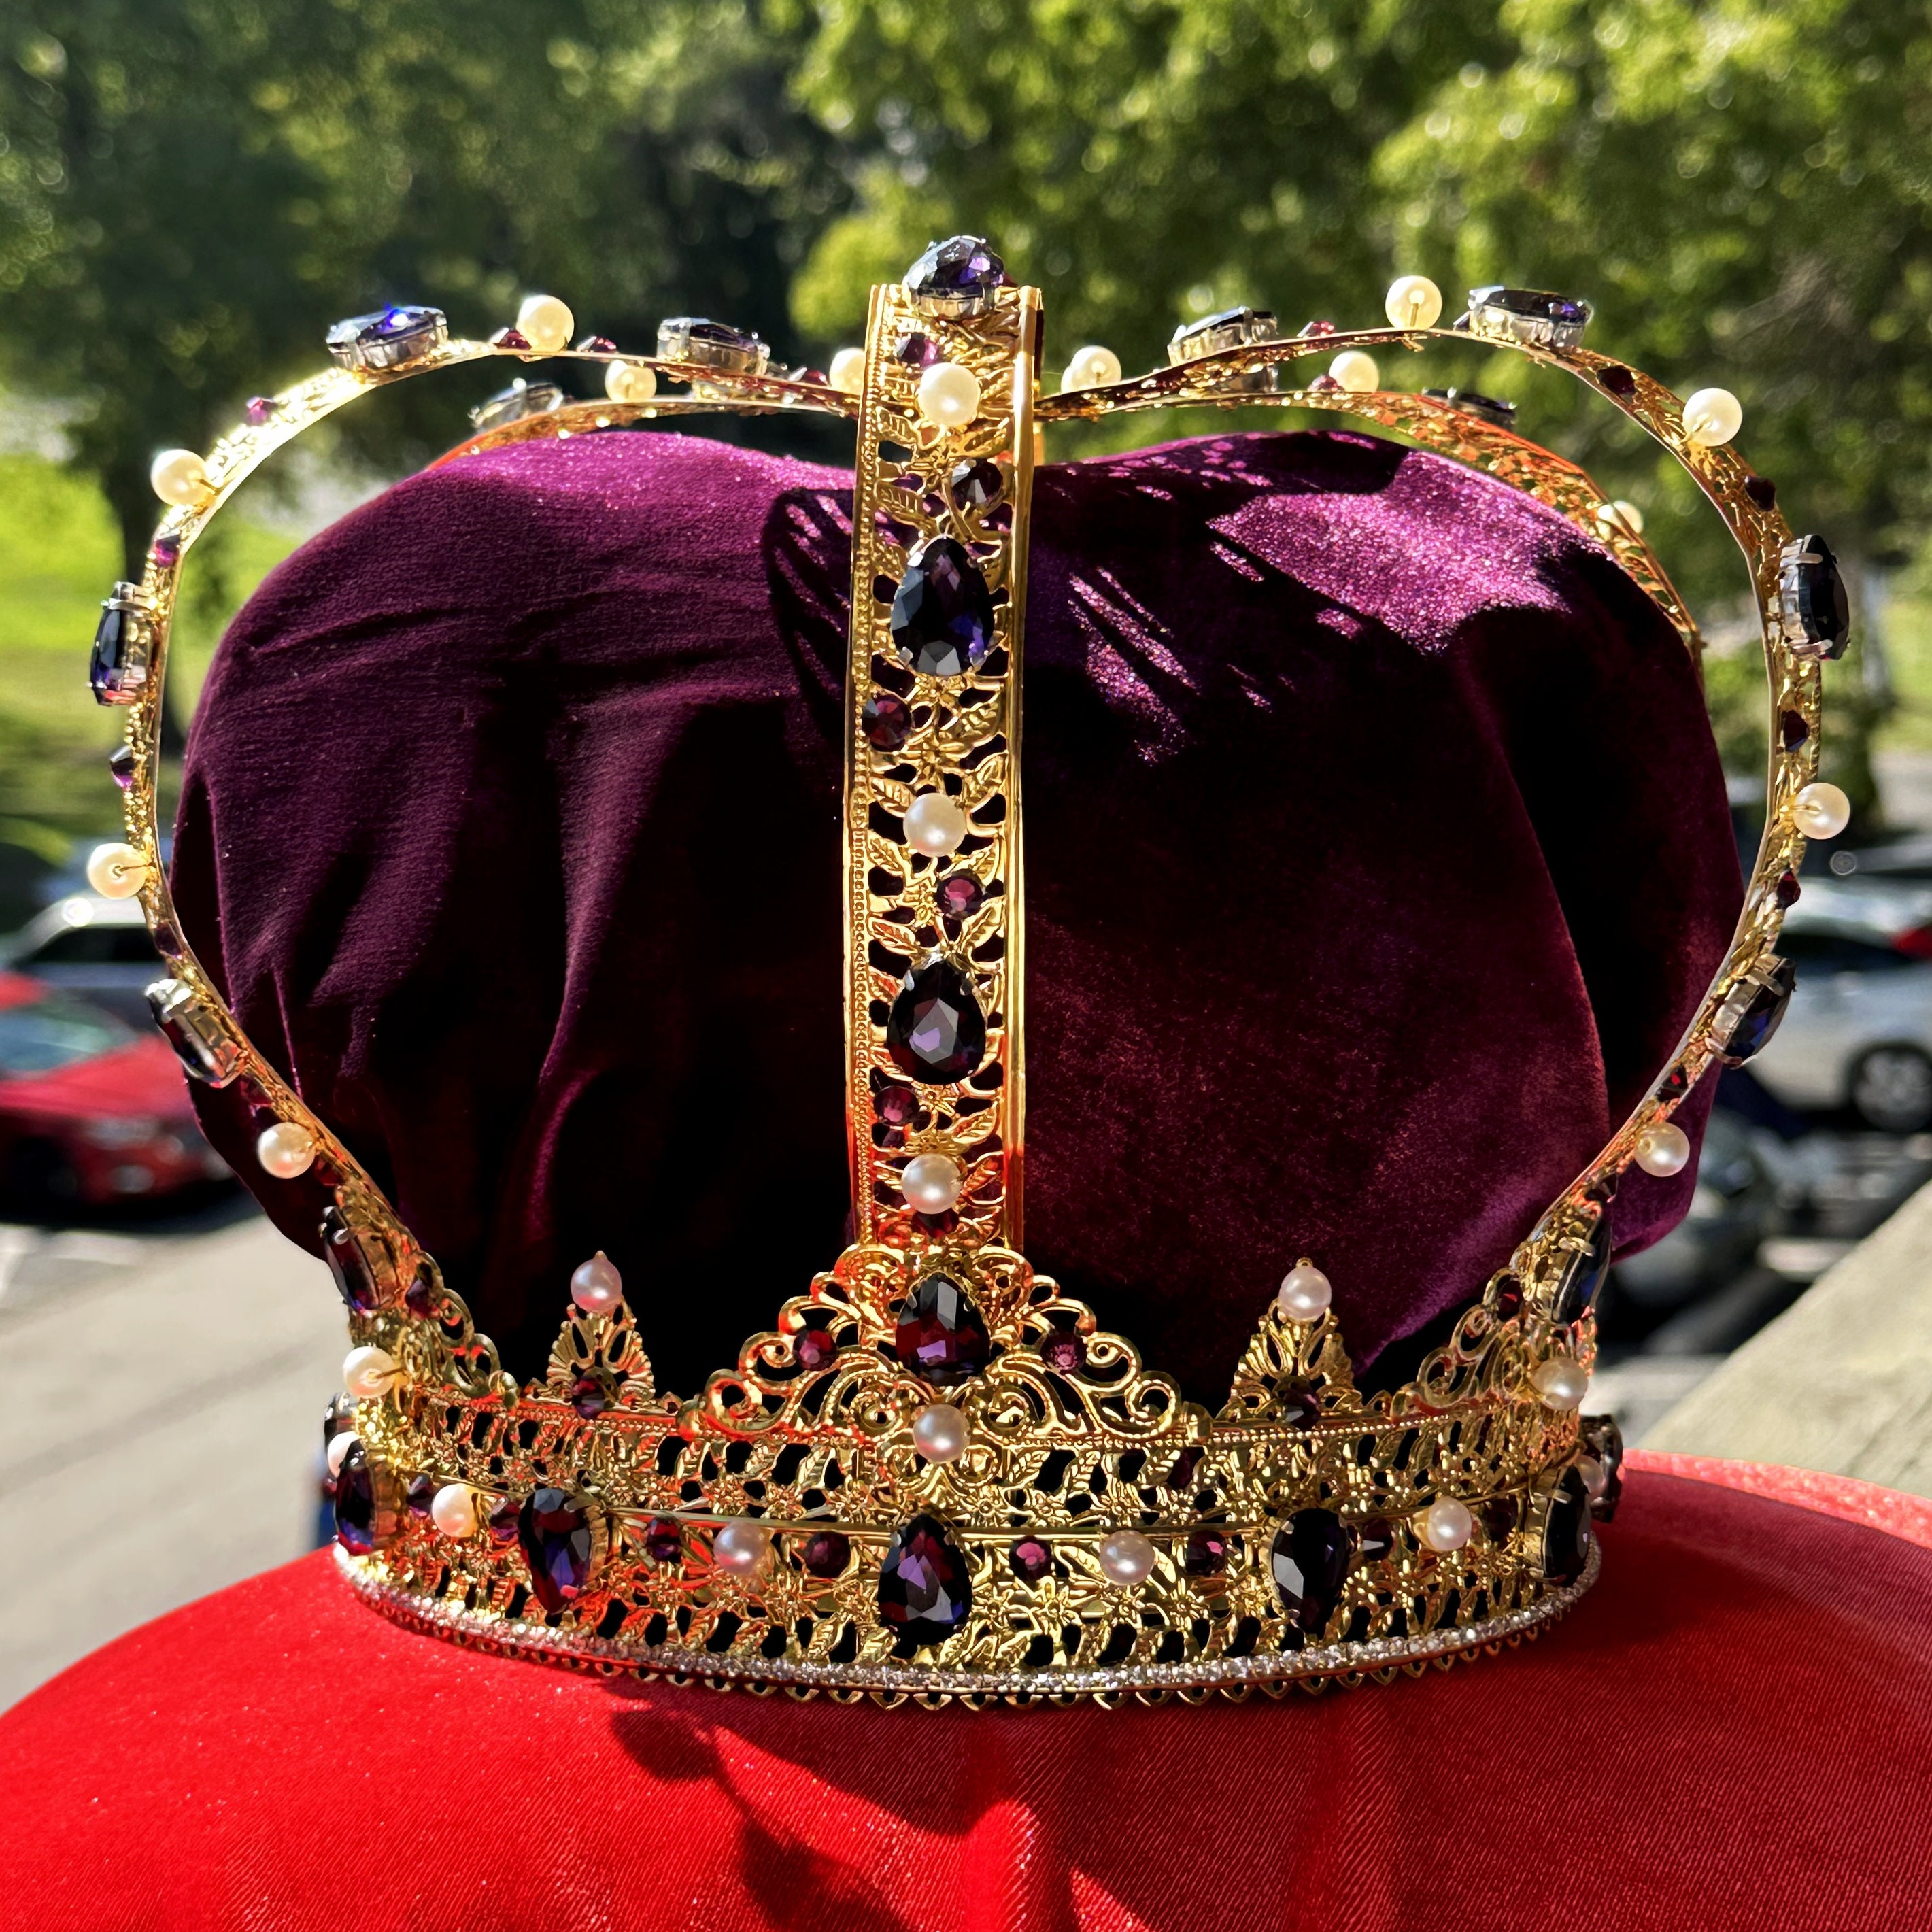 ROYAL Purple King Crown, Male Crown, Men's Crown, Crowns and Tiaras, Gold,  Medieval, Head Accessories, Custom Crown,baroque Crown, Crown 